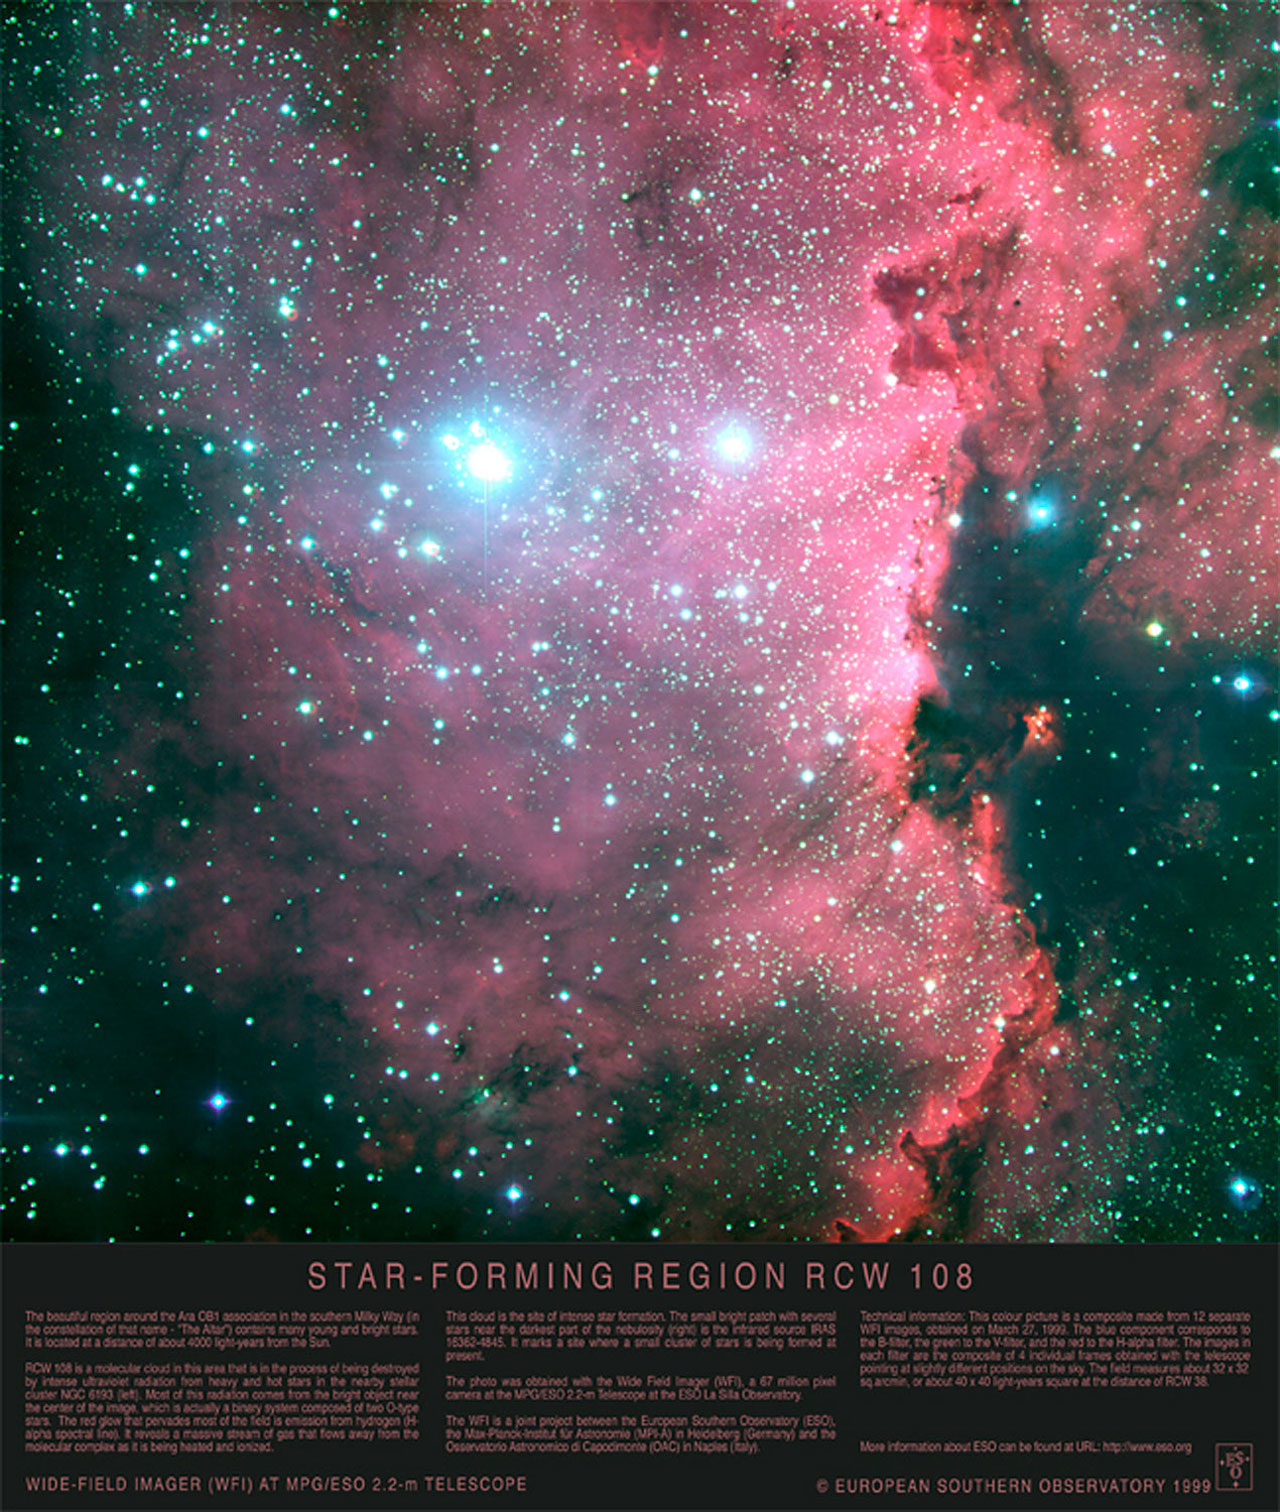 Elemental Langt væk Illustrer Poster: Star-forming Region RCW 108 | ESO Danmark